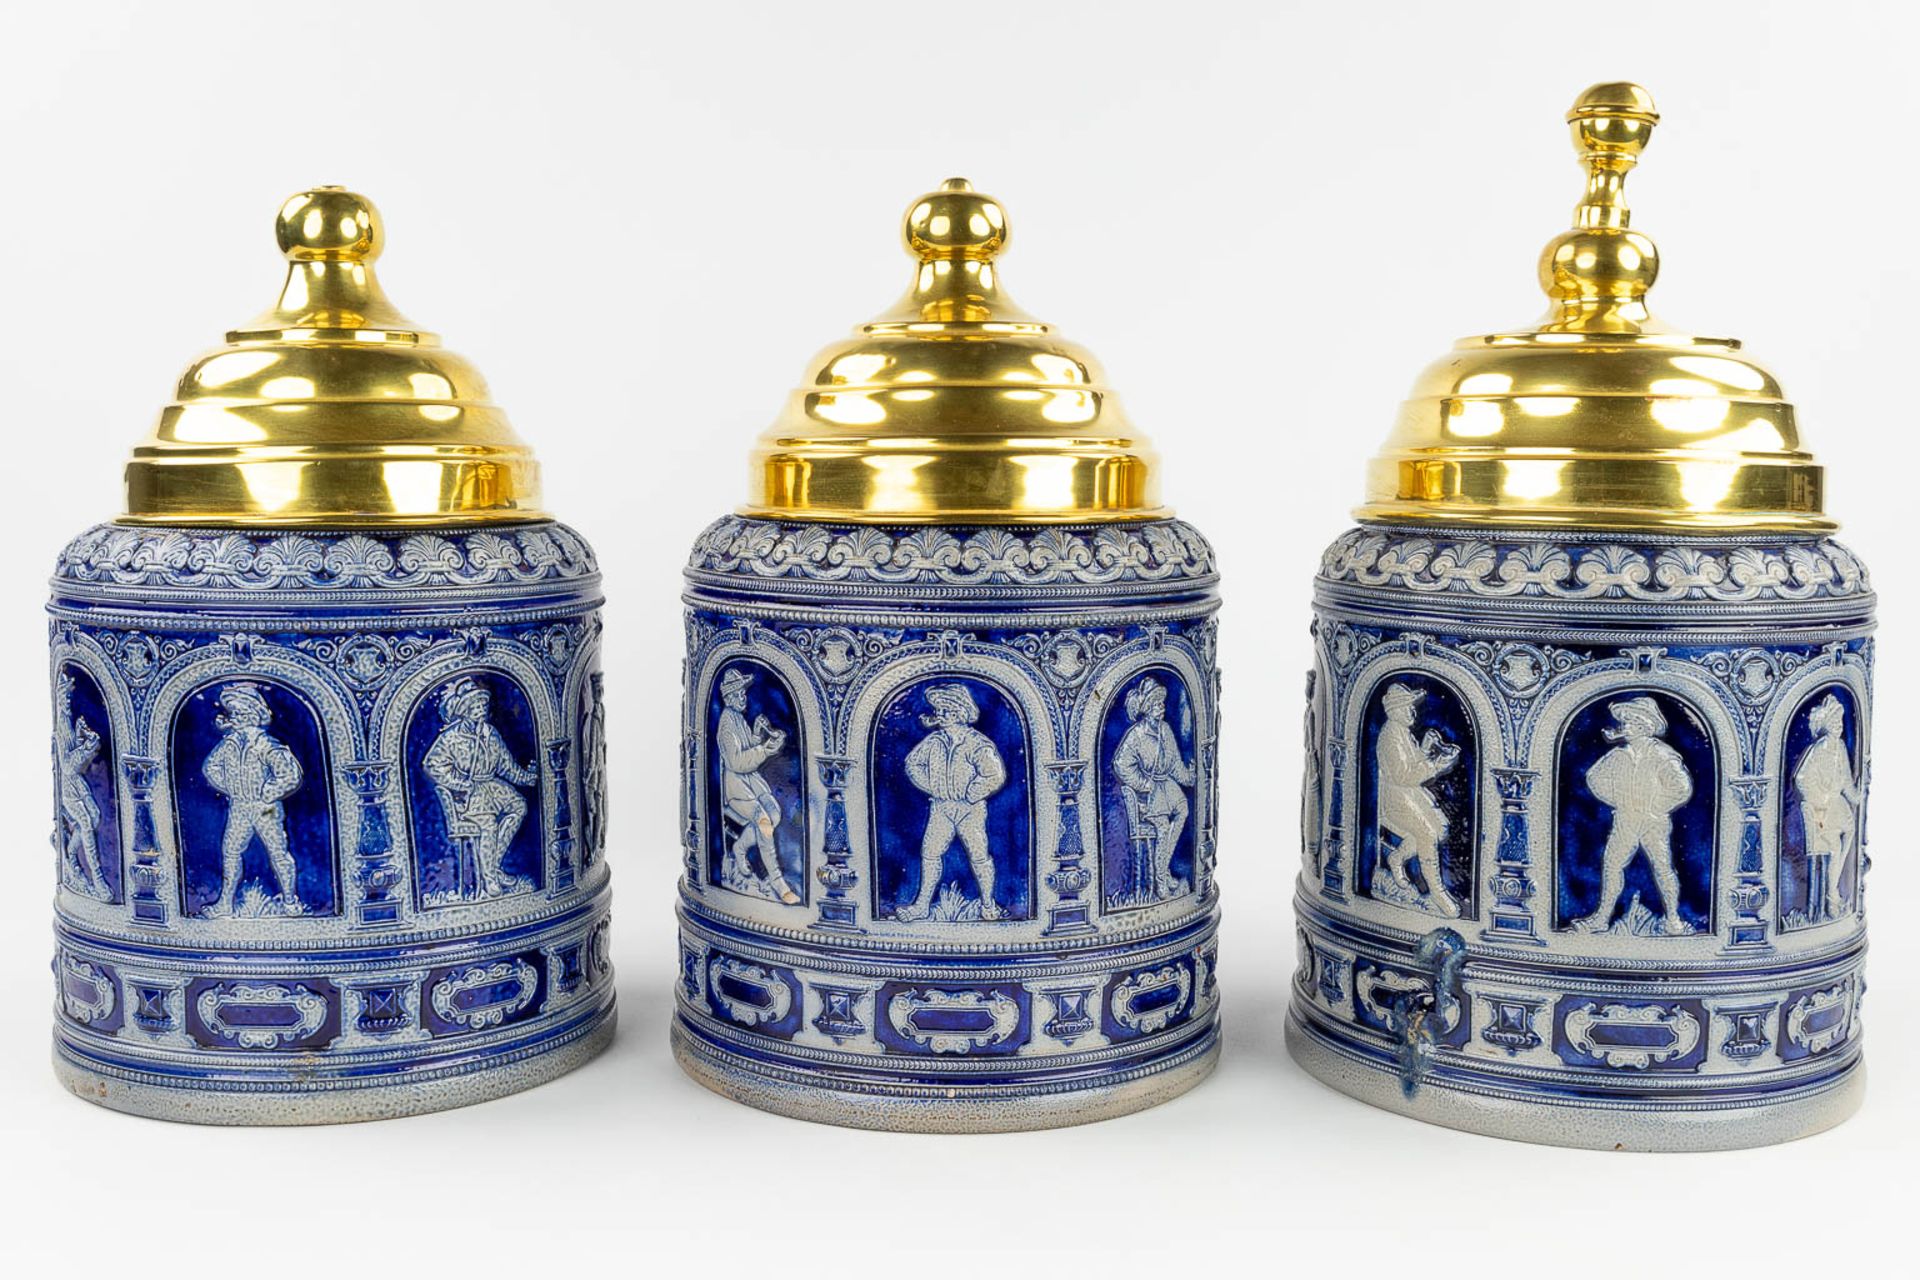 A set of 3 grs tabacco jars with brass lid, Germany, 19th C. (H: 38 x D: 23 cm) - Image 5 of 17